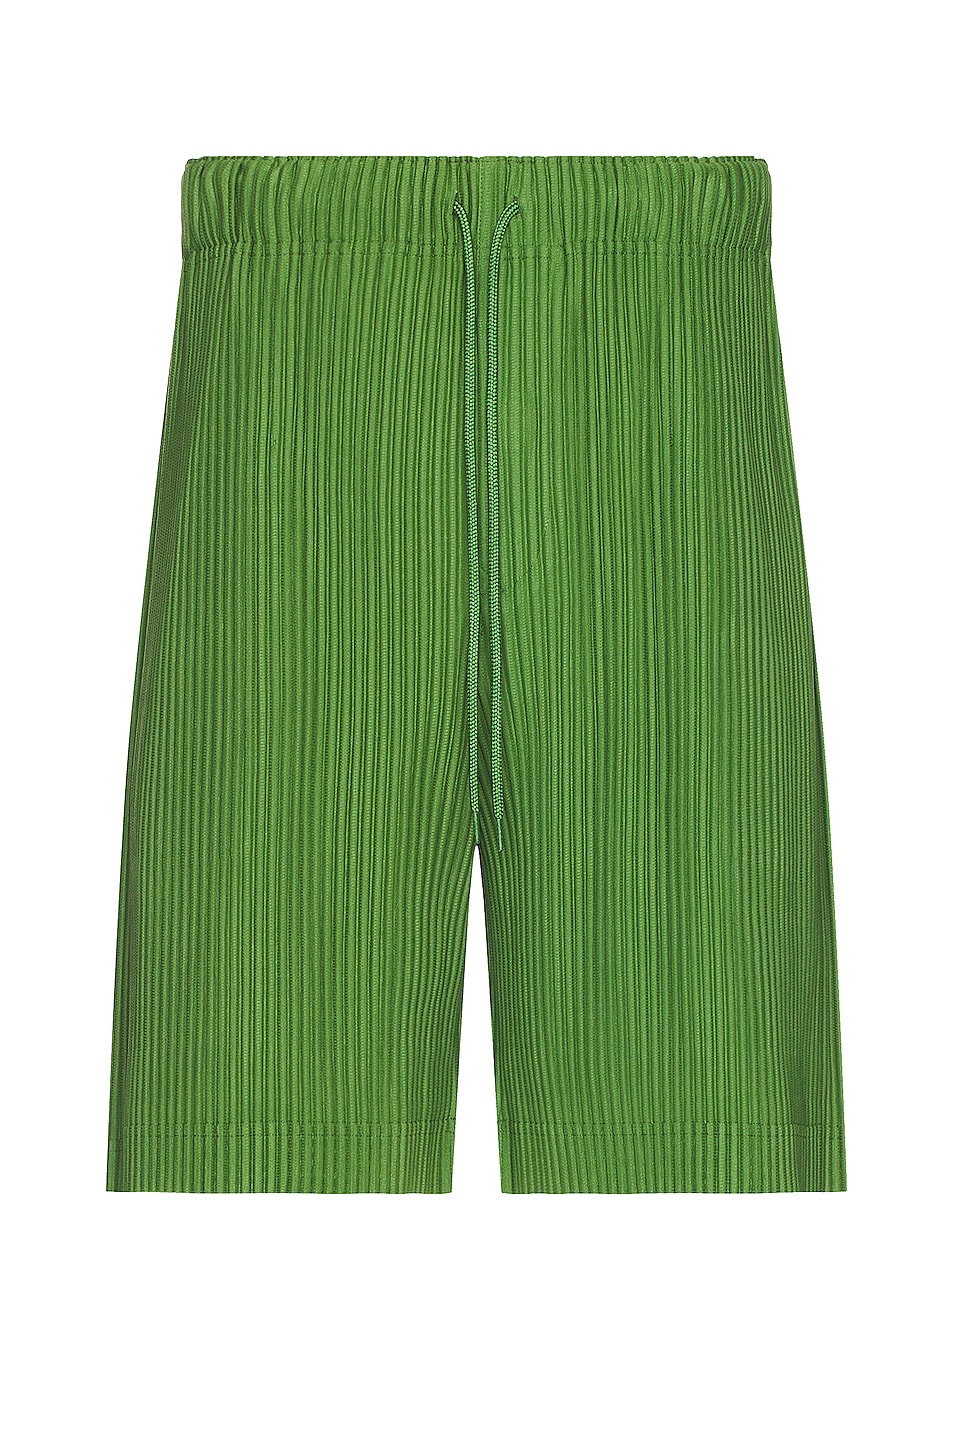 Homme Plisse Issey Miyake Shorts in Grass Green | FWRD